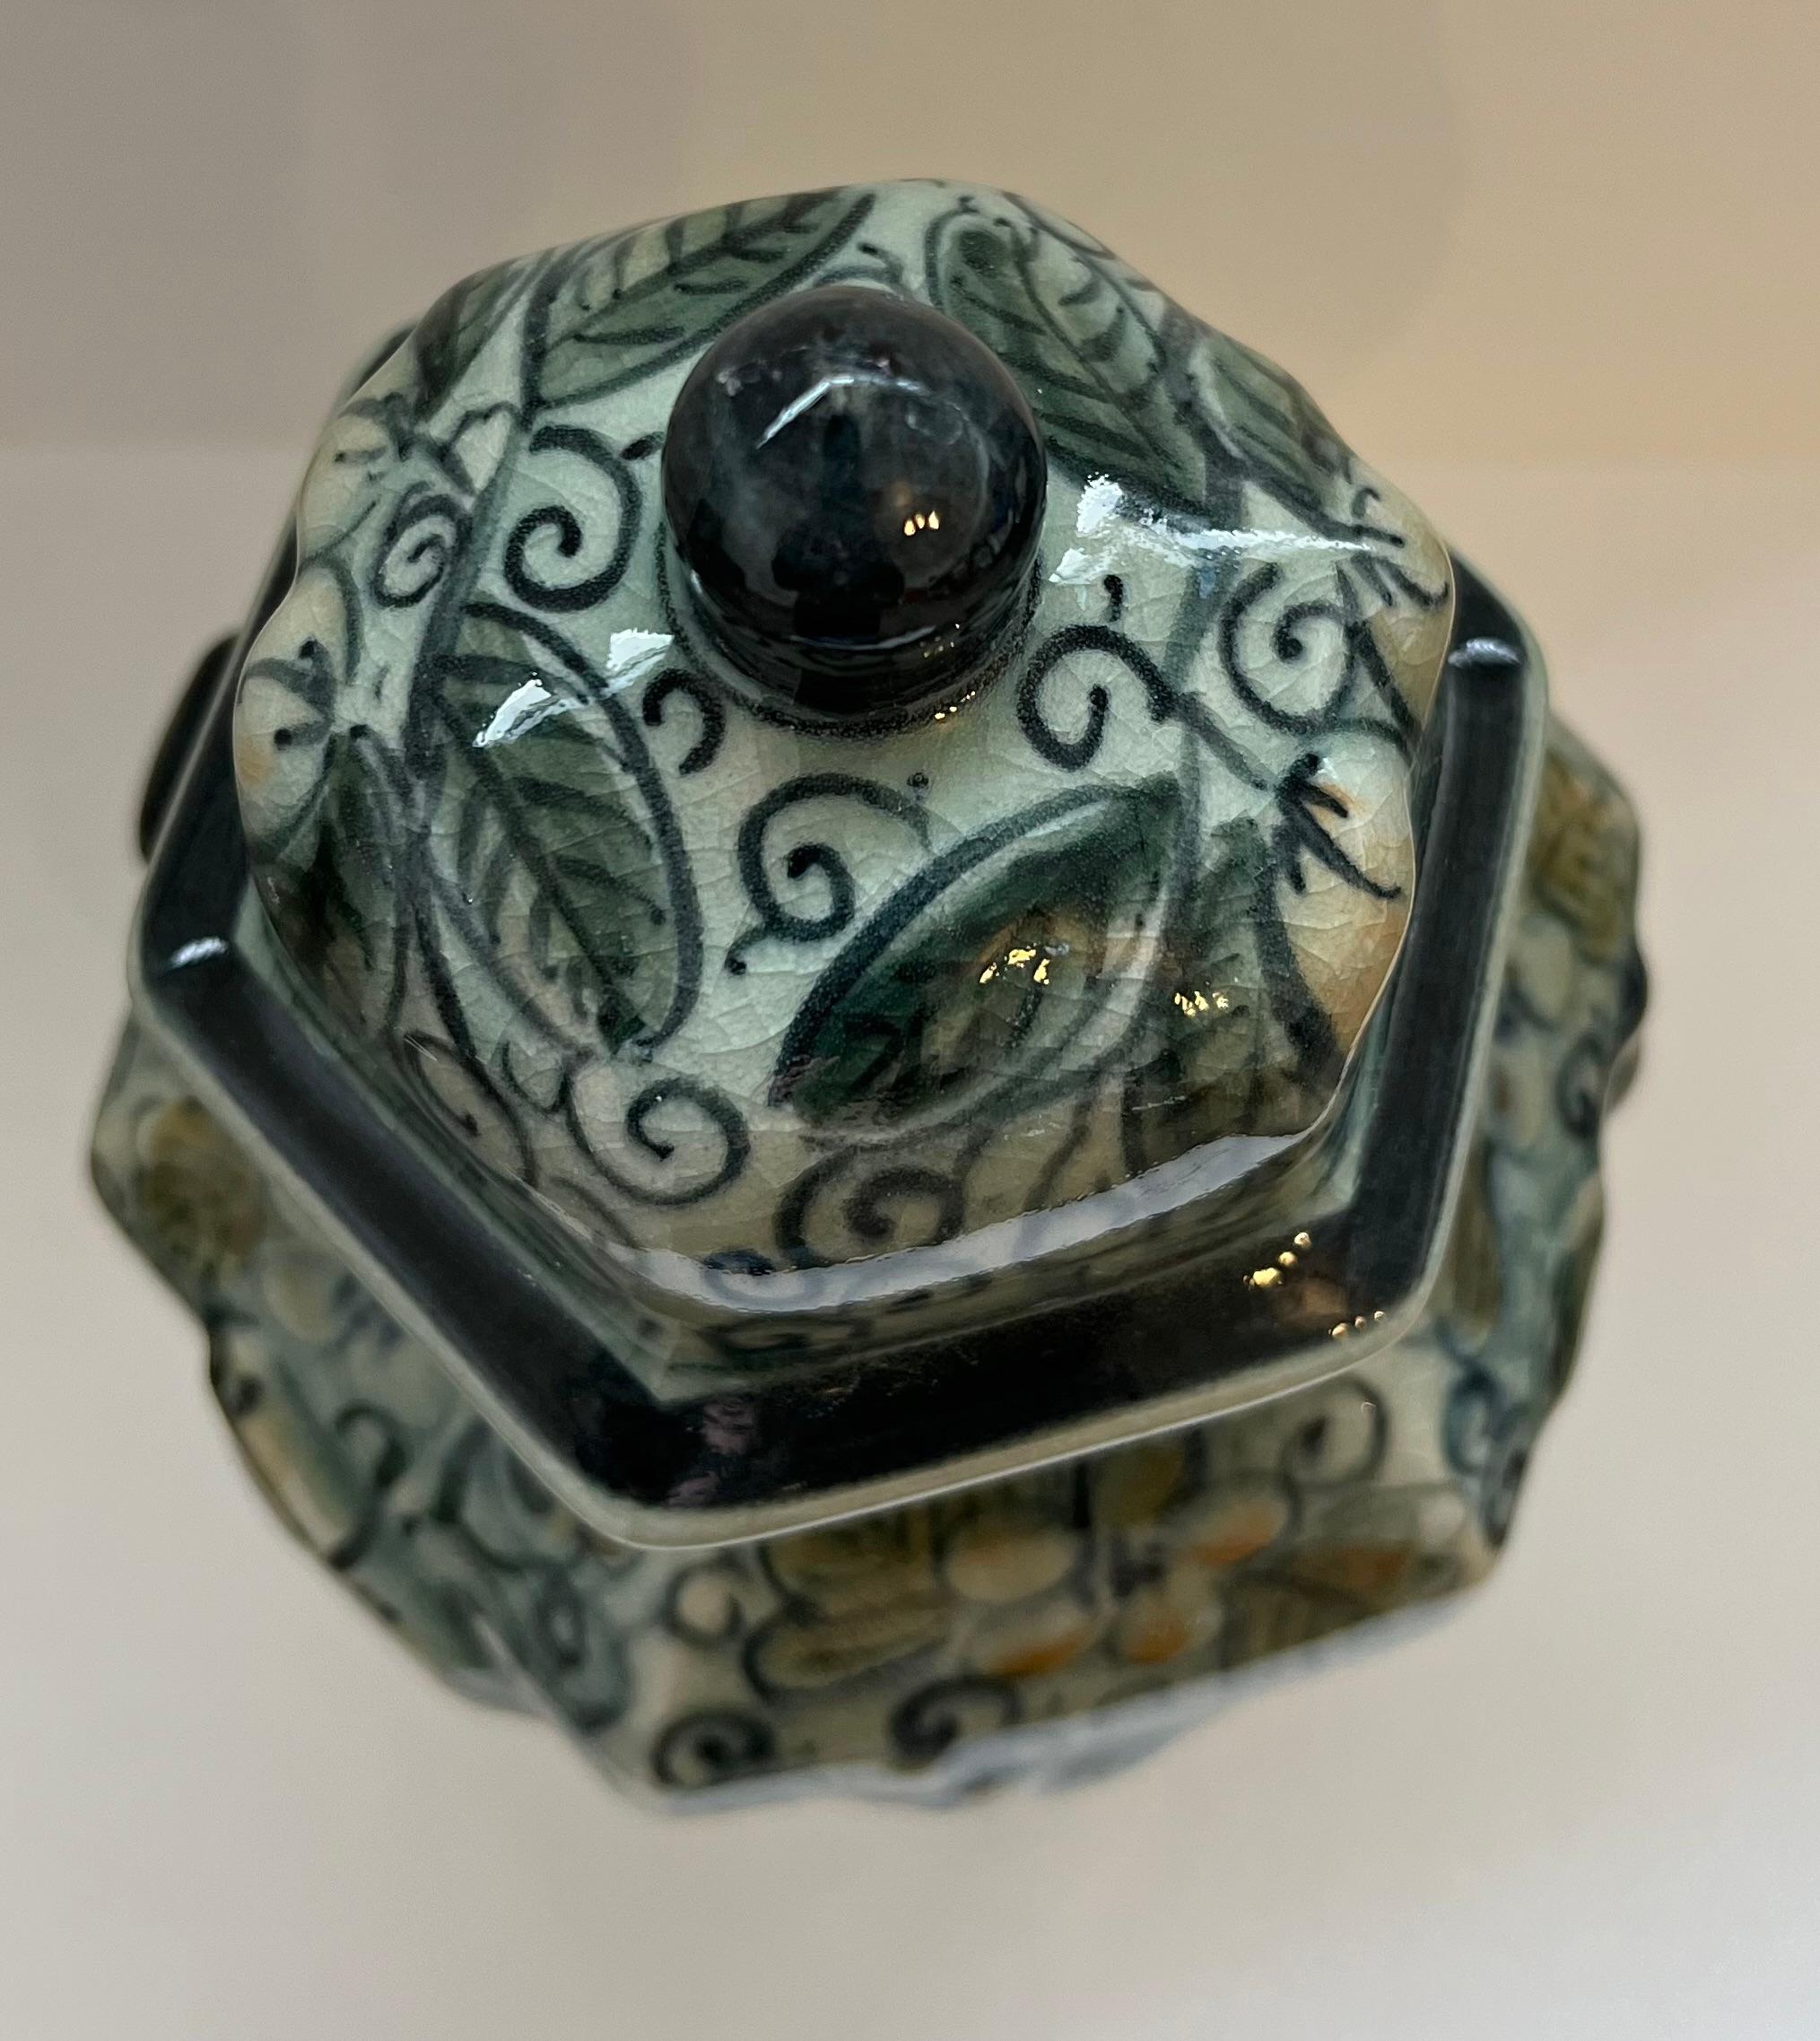 Wunderschönes Maitland Smith Celadon Ceramic Crackle Covered Jar, das in Thailand handgefertigt wurde. Es hat ein lebhaftes, handgemaltes Blumen- und Blattmotiv mit erhabenen, verschnörkelten Mustern auf jeder der sechs Seiten. Die Vase hat eine